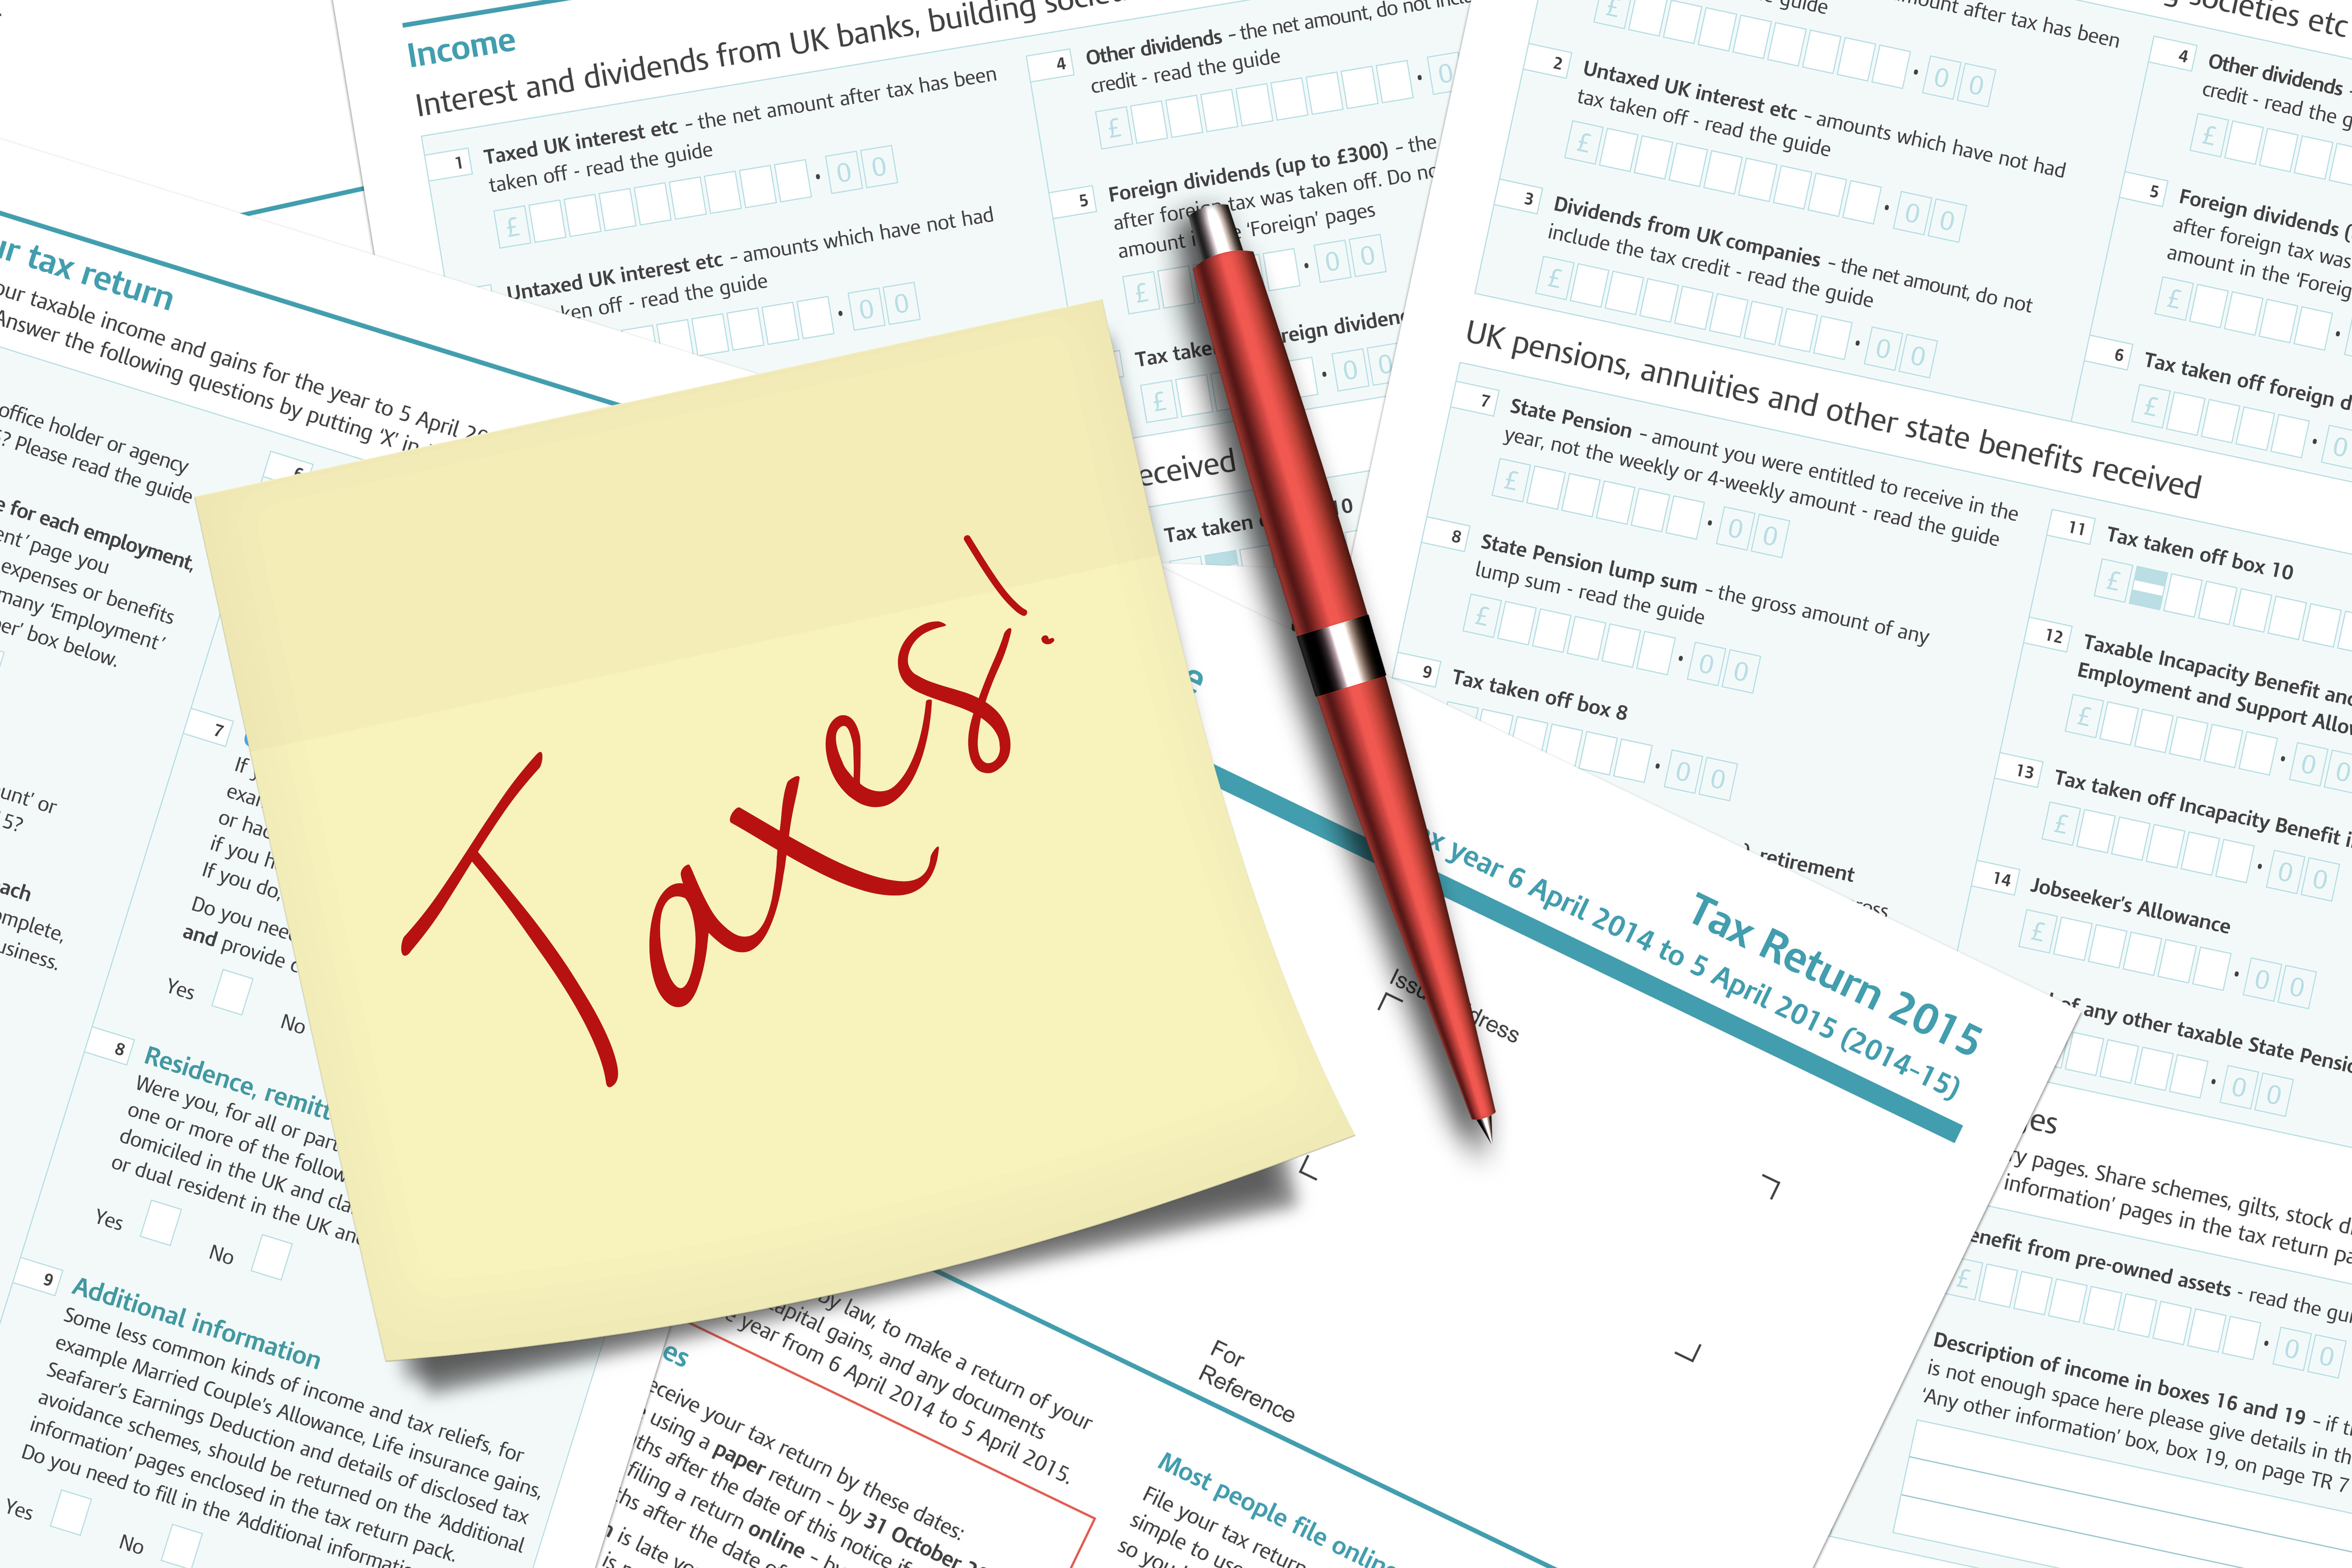 locum tenens tax advice 2